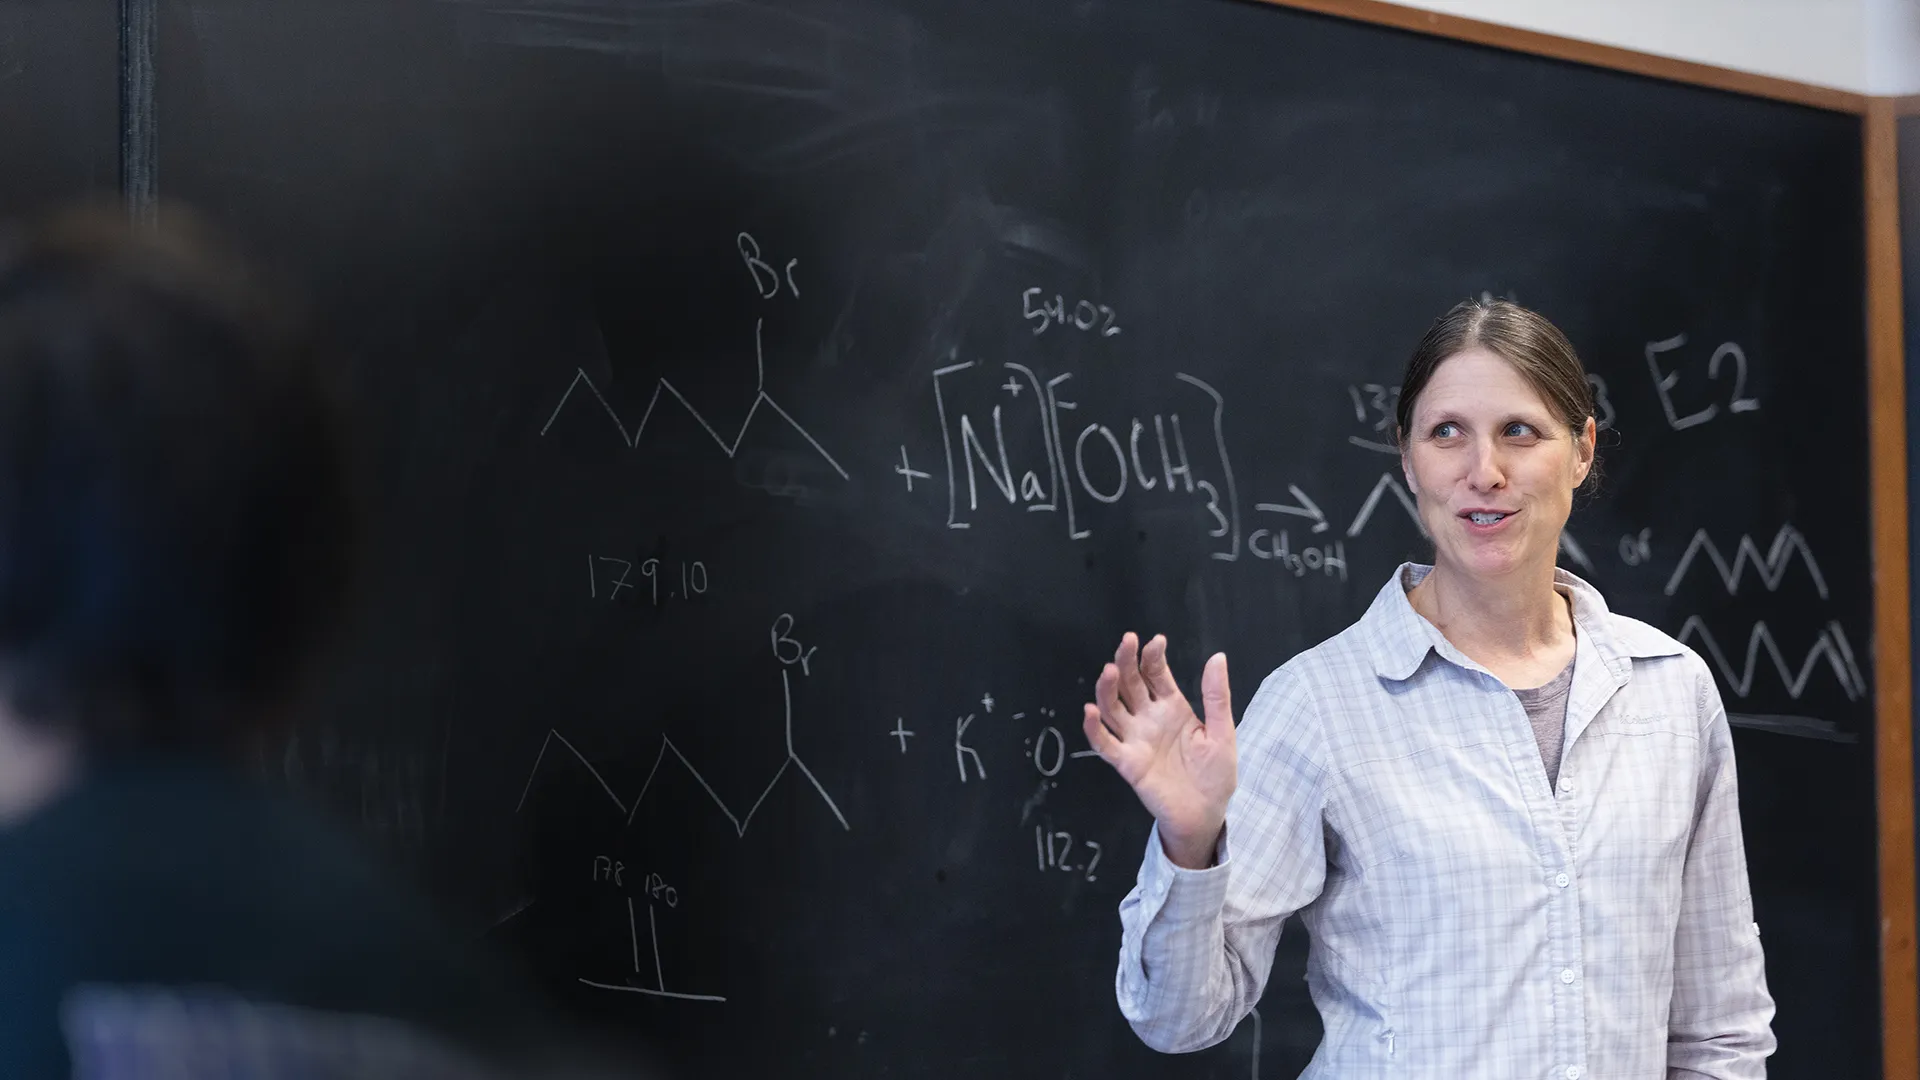 Houghton chemistry professor Dr. Karen Torraca teaching by blackboard.